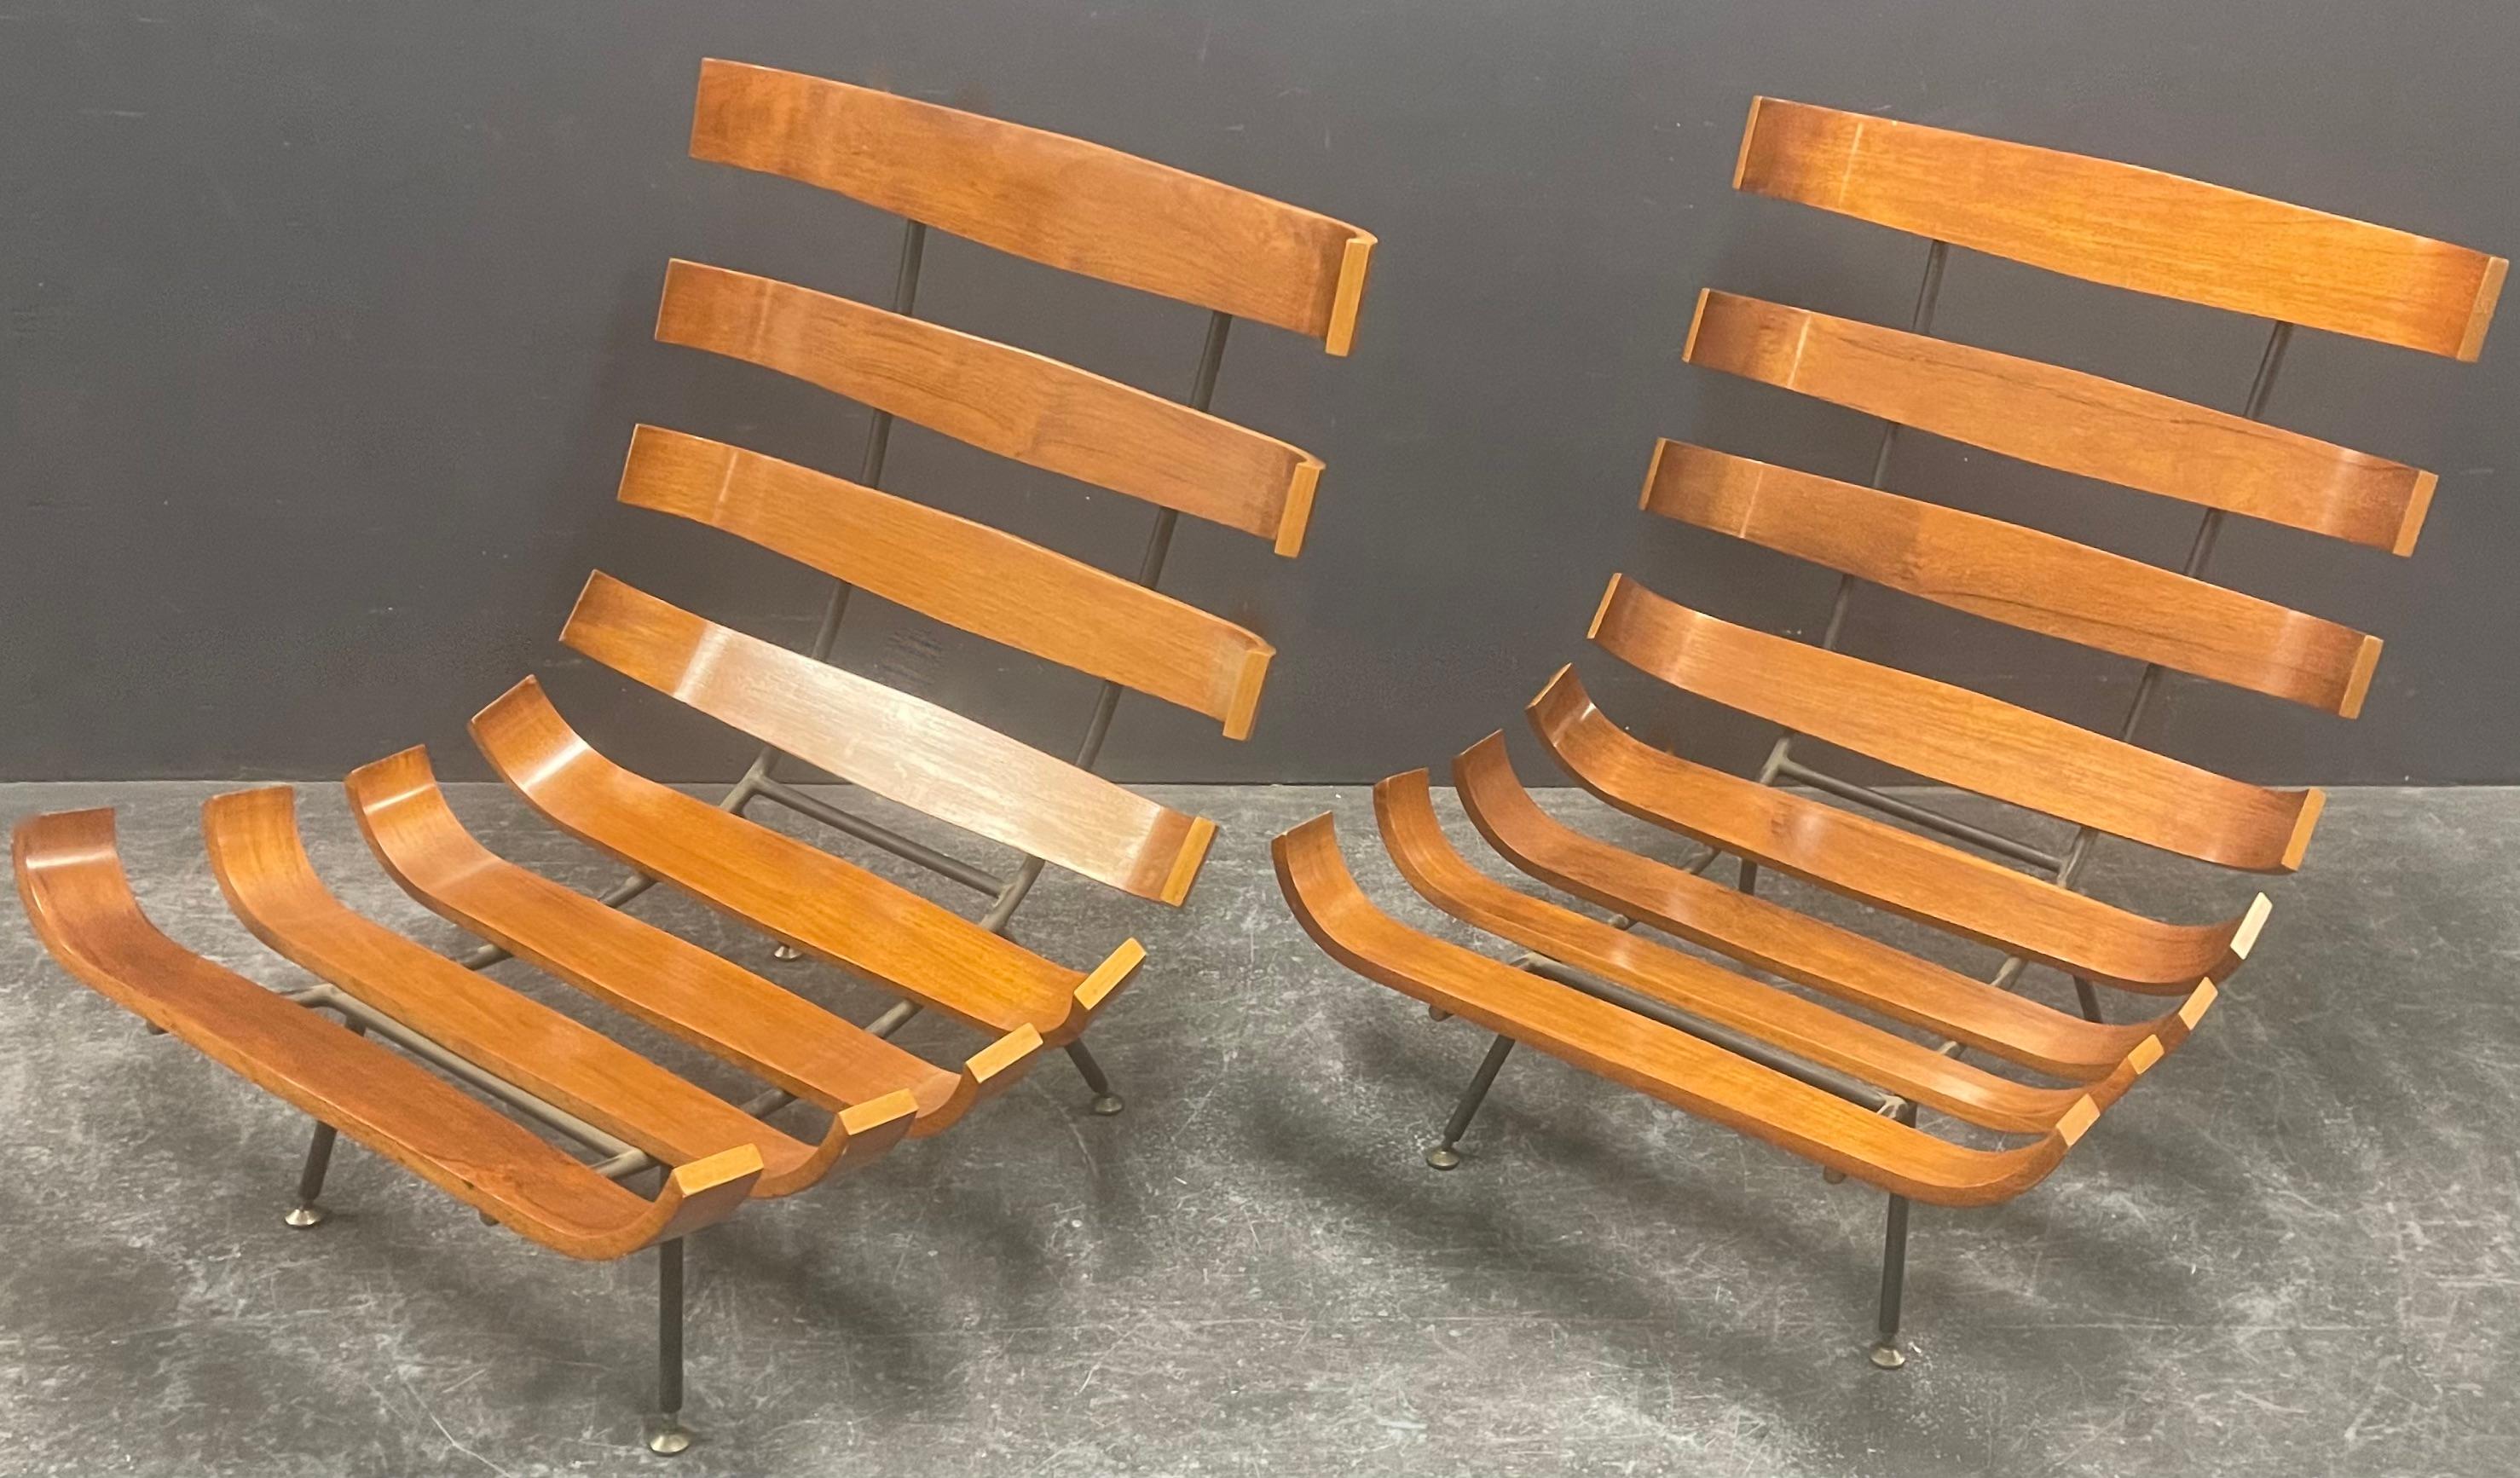 maravilloso par de sillones de Carlo Hauner y Martin Eisler. fabricados por forma nova en los años 50 y aún en perfecto estado. el nogal claro es muy brillante y los bordes son más claros, lo que da al sillón un aspecto muy especial. todos los pies